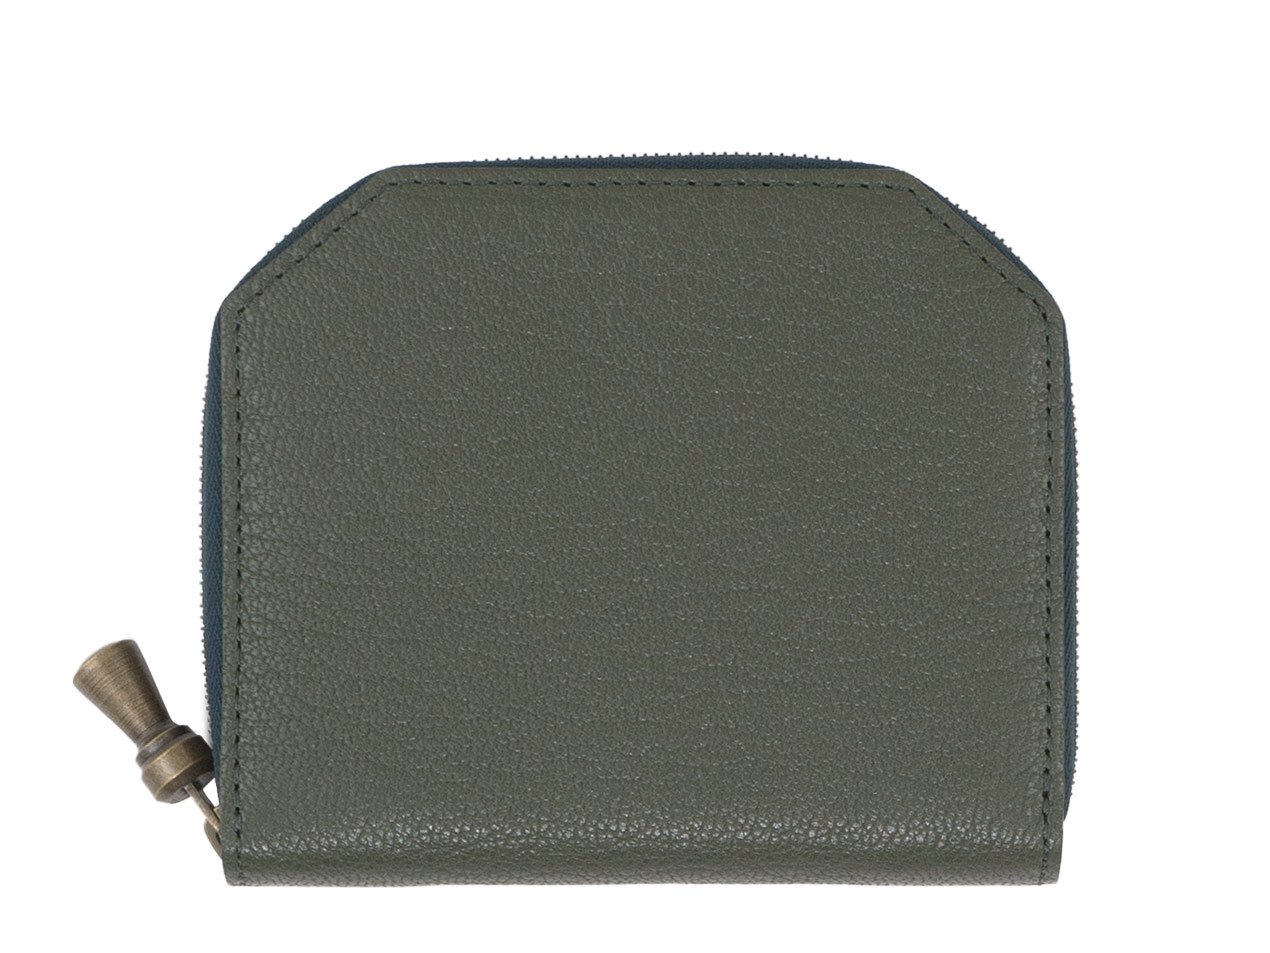 POSTALCO Kettle Zipper Wallet Thin Moss Green